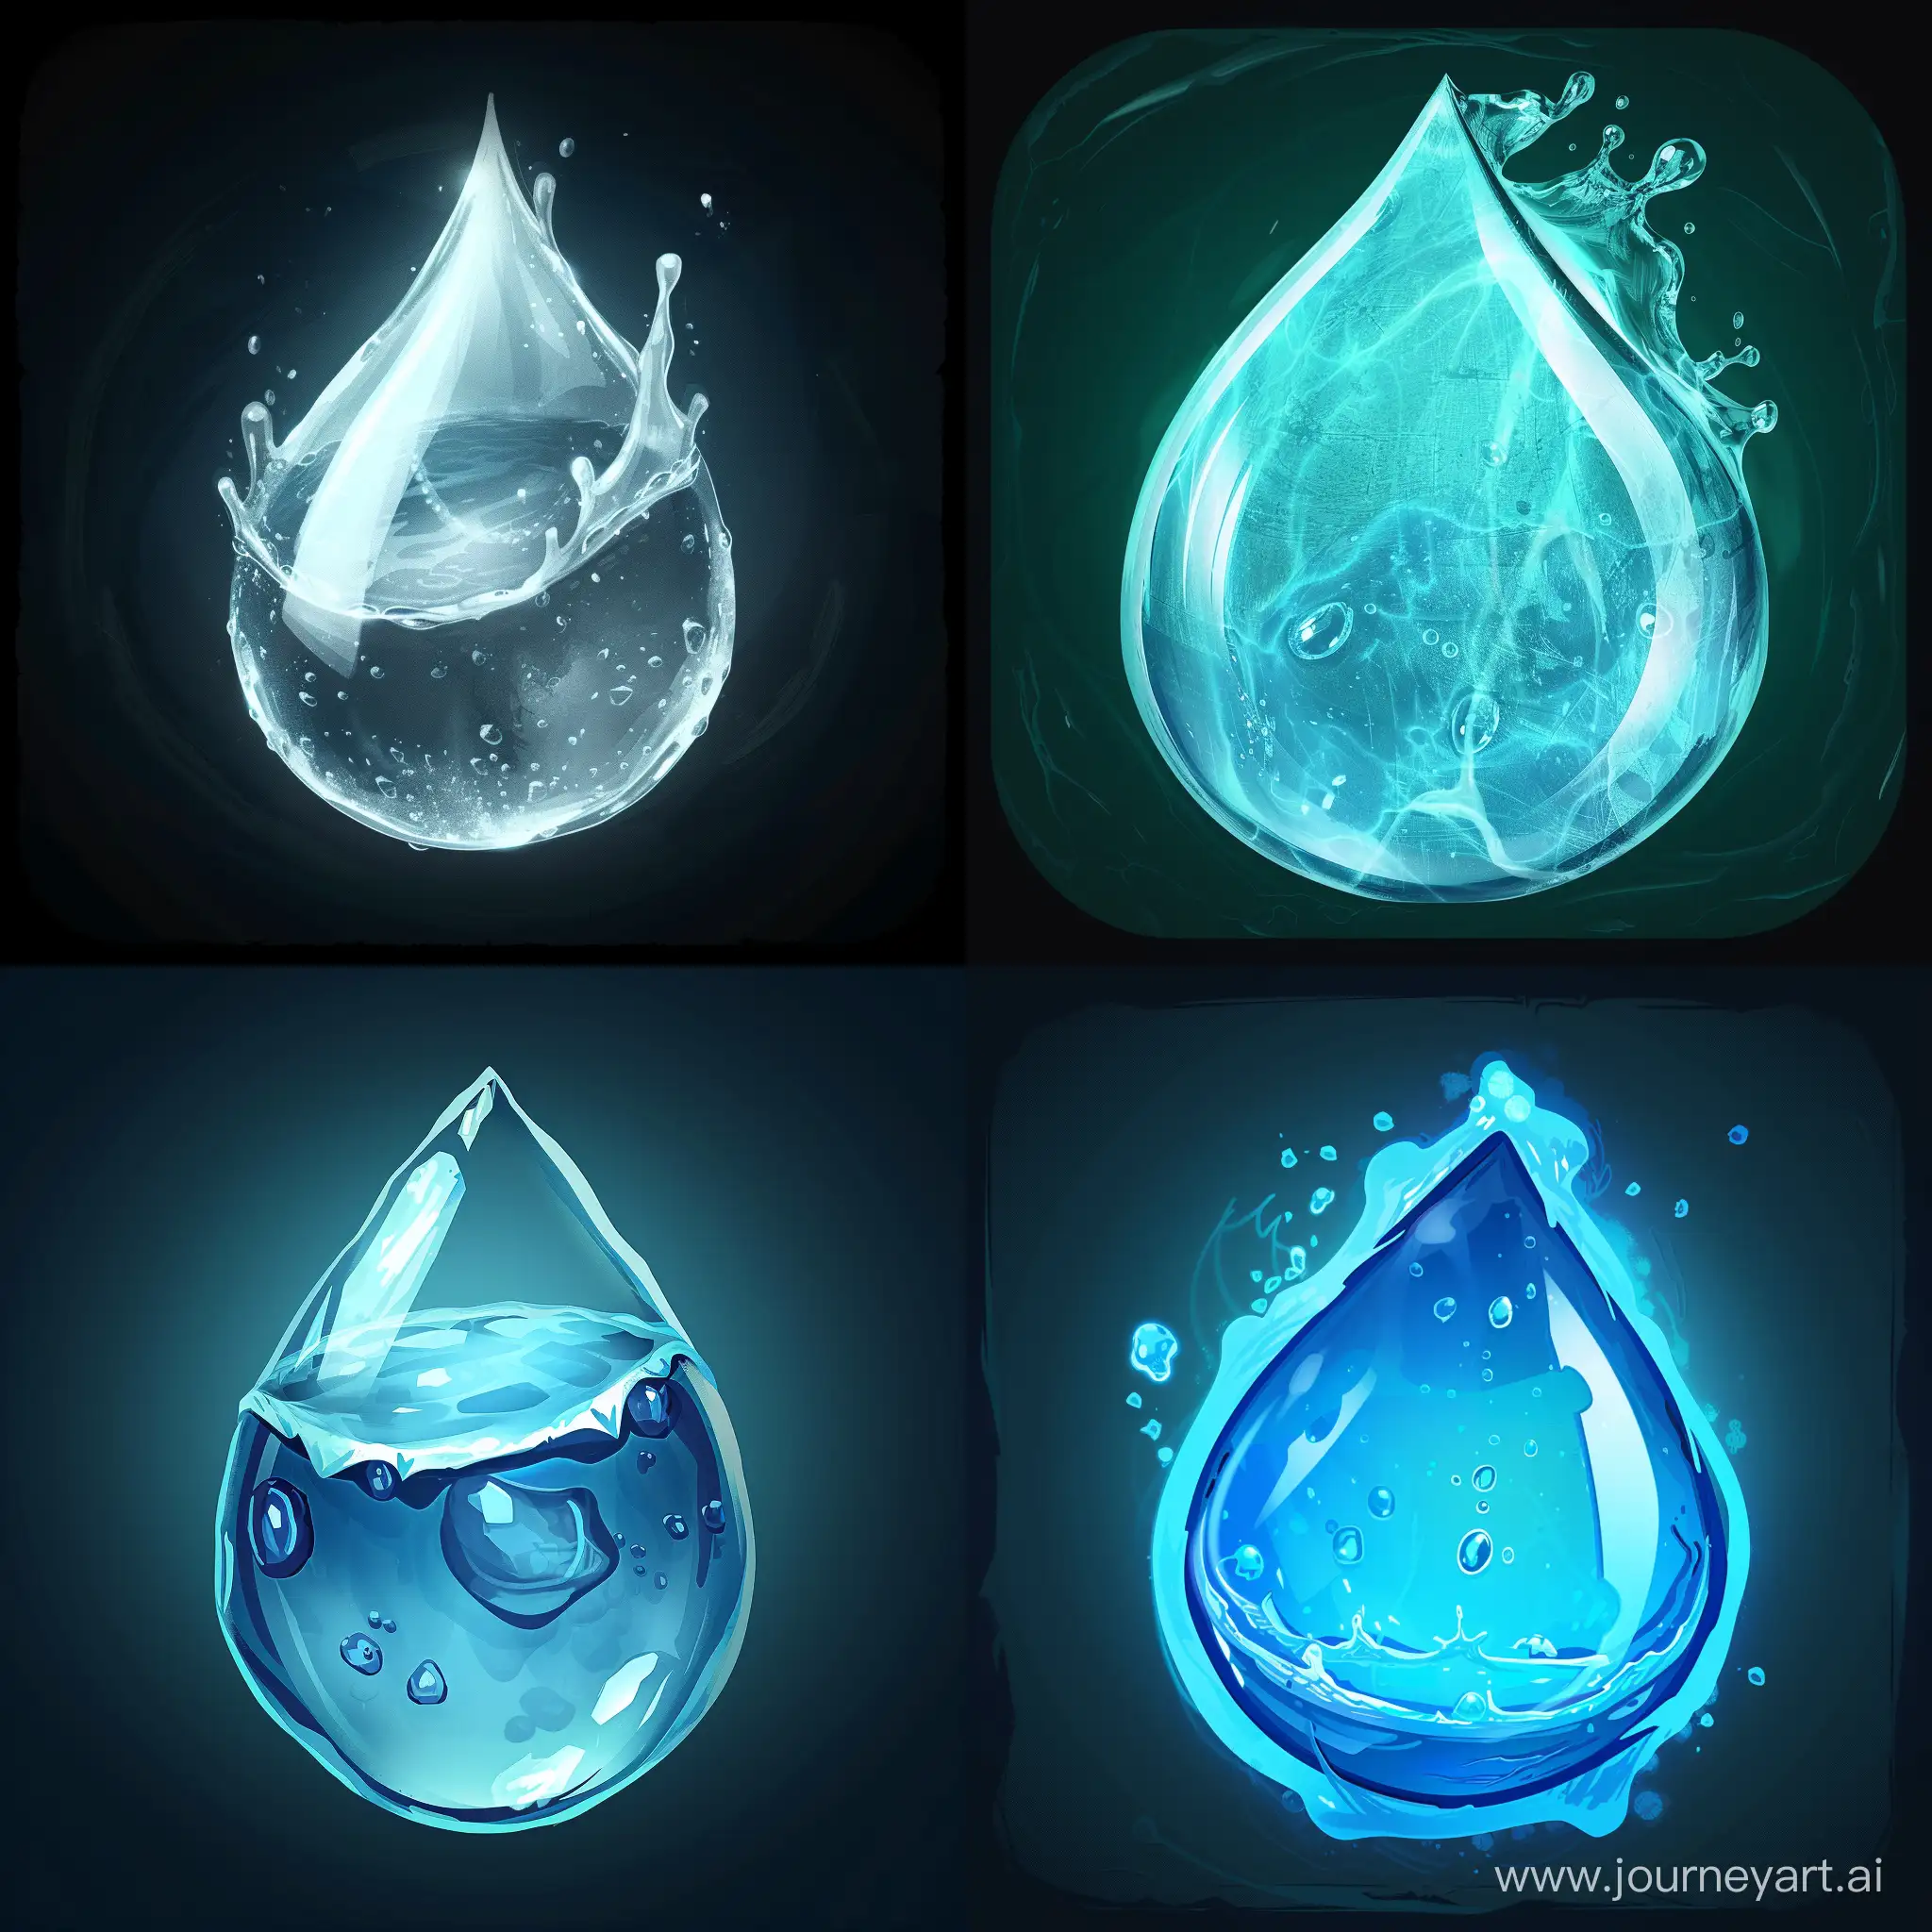 создай иконку для компьютерной игры в жанре выживание. должна быть изображена капля воды.